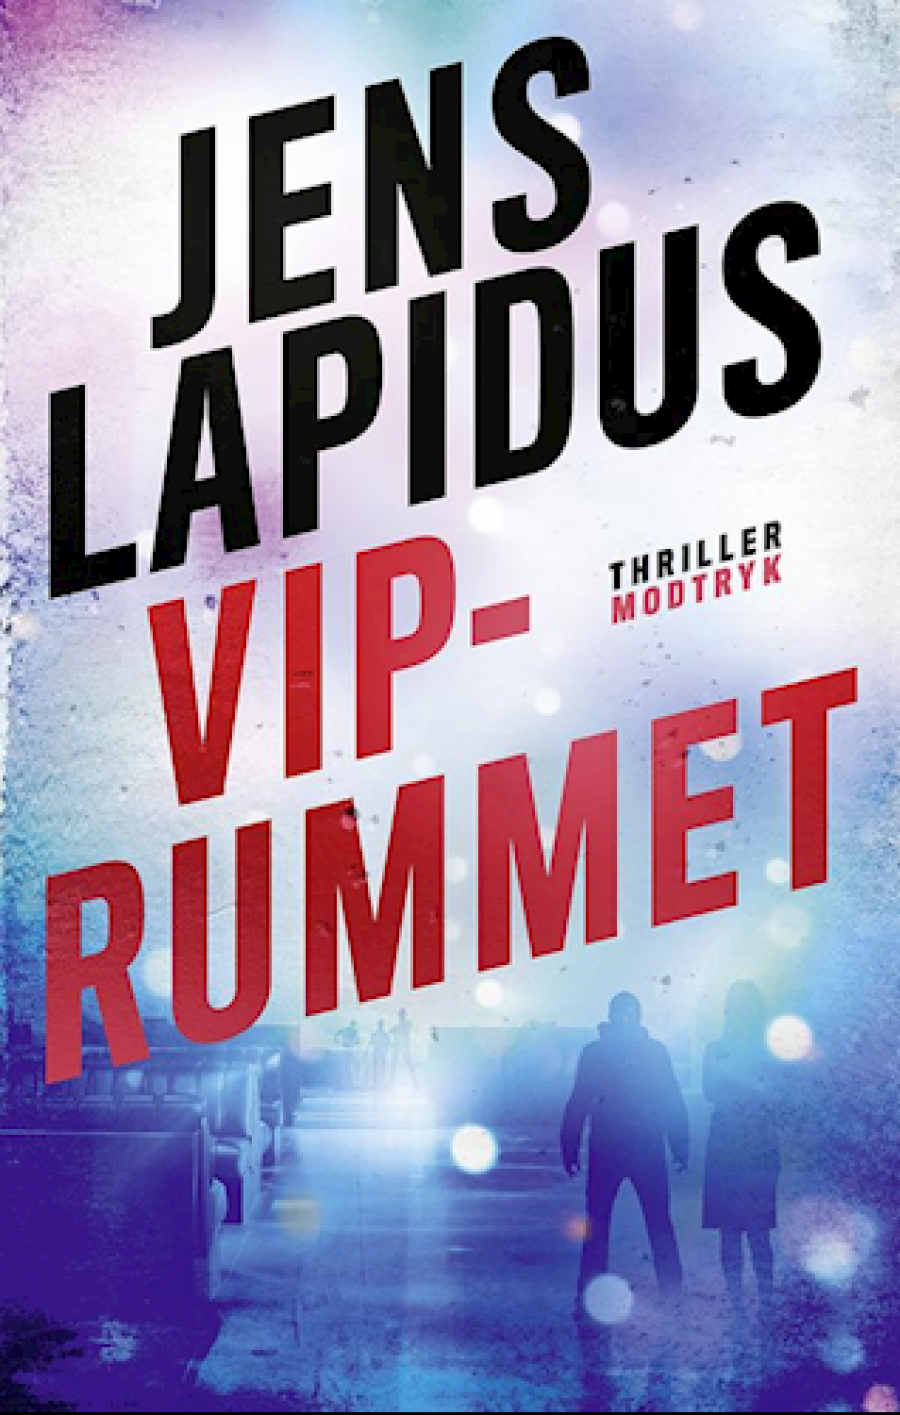 Forside til bogen "VIP-Rummet" af Jens Lapidus